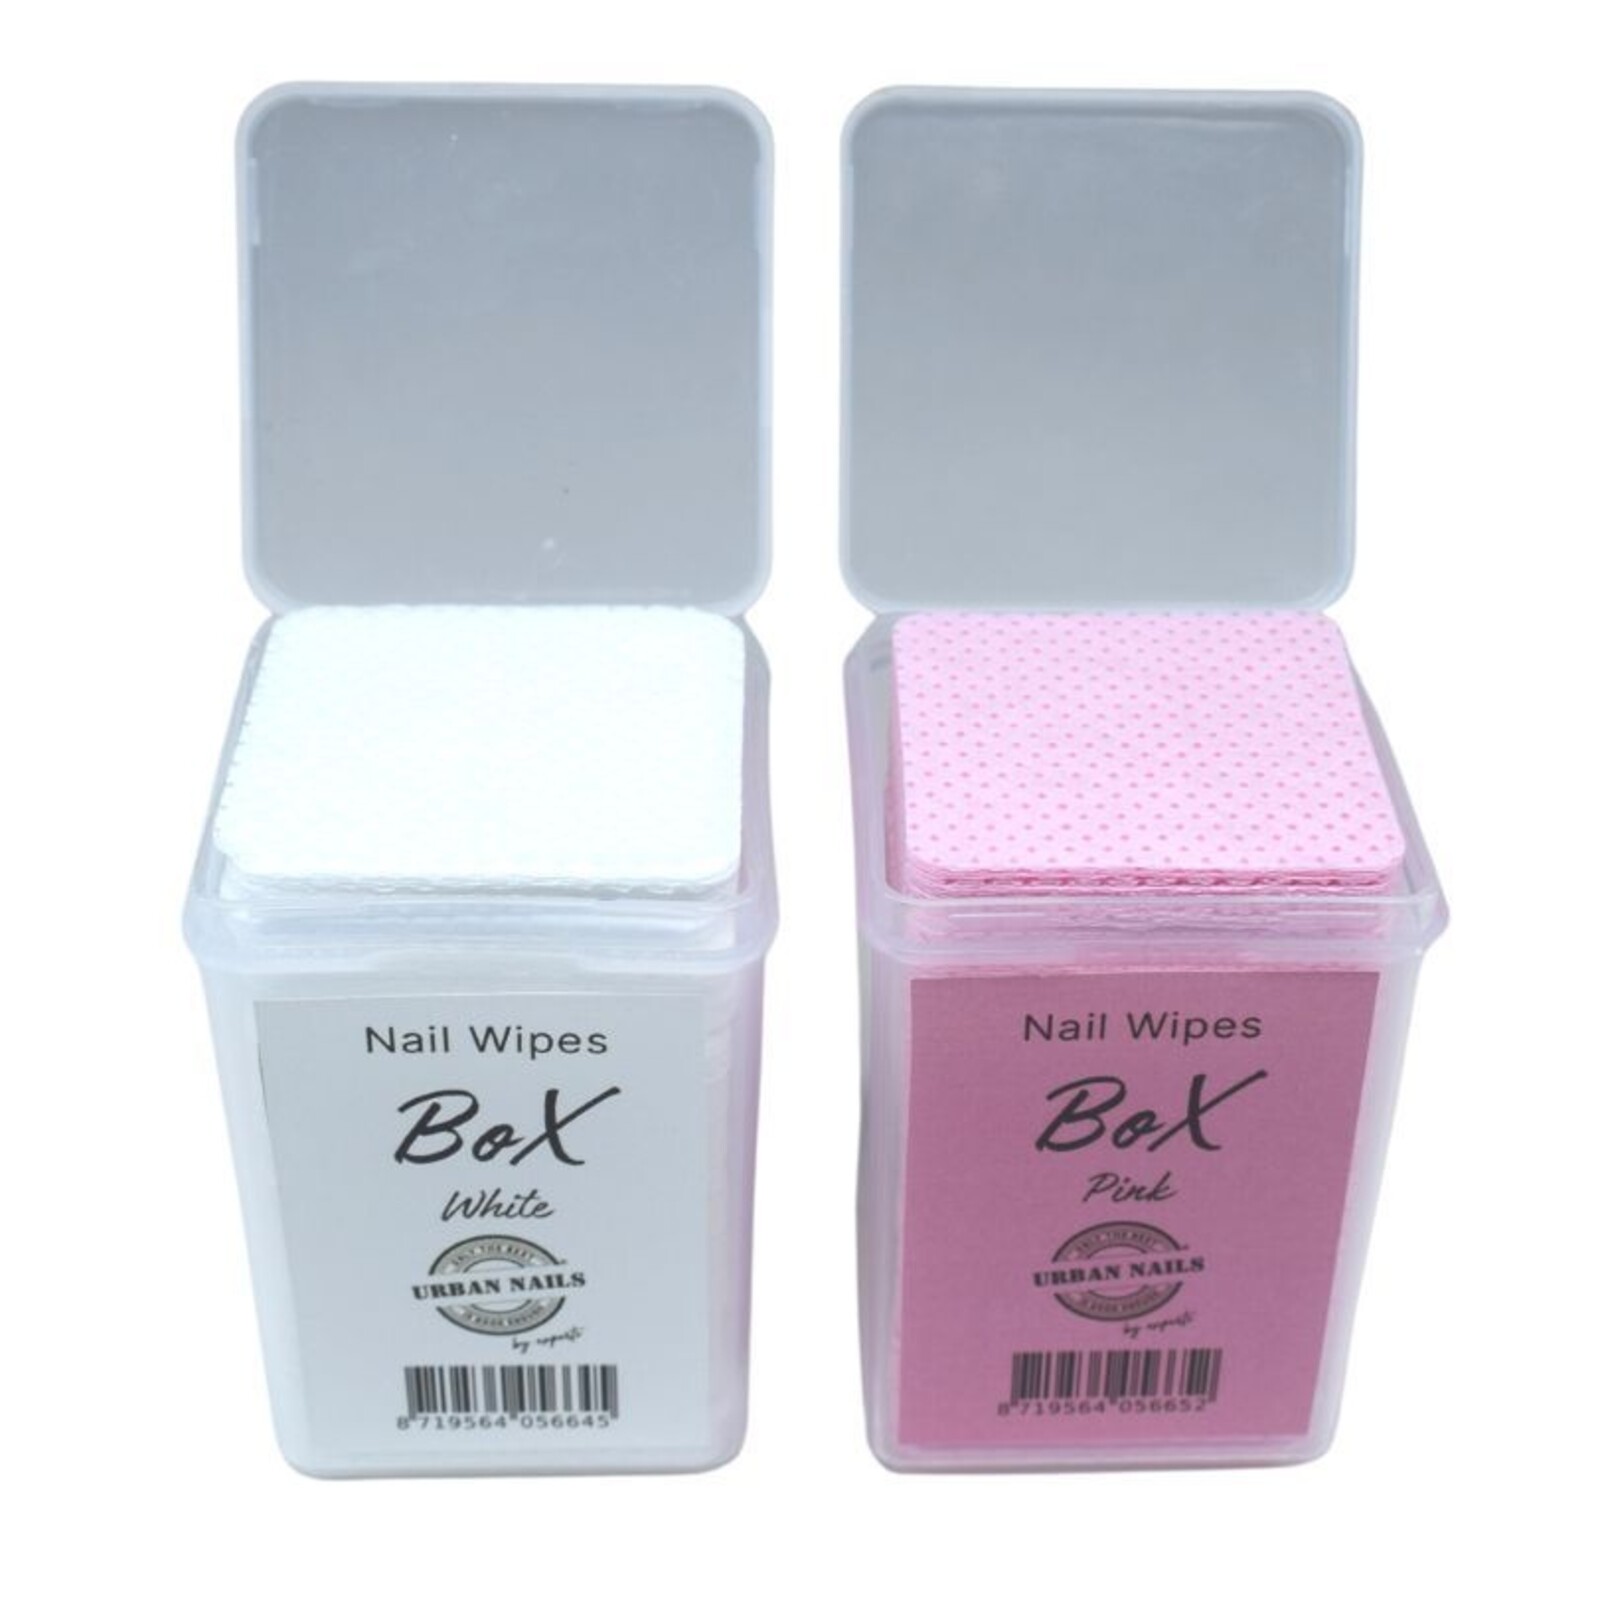 Urban nails Nail Wipe Box Pink